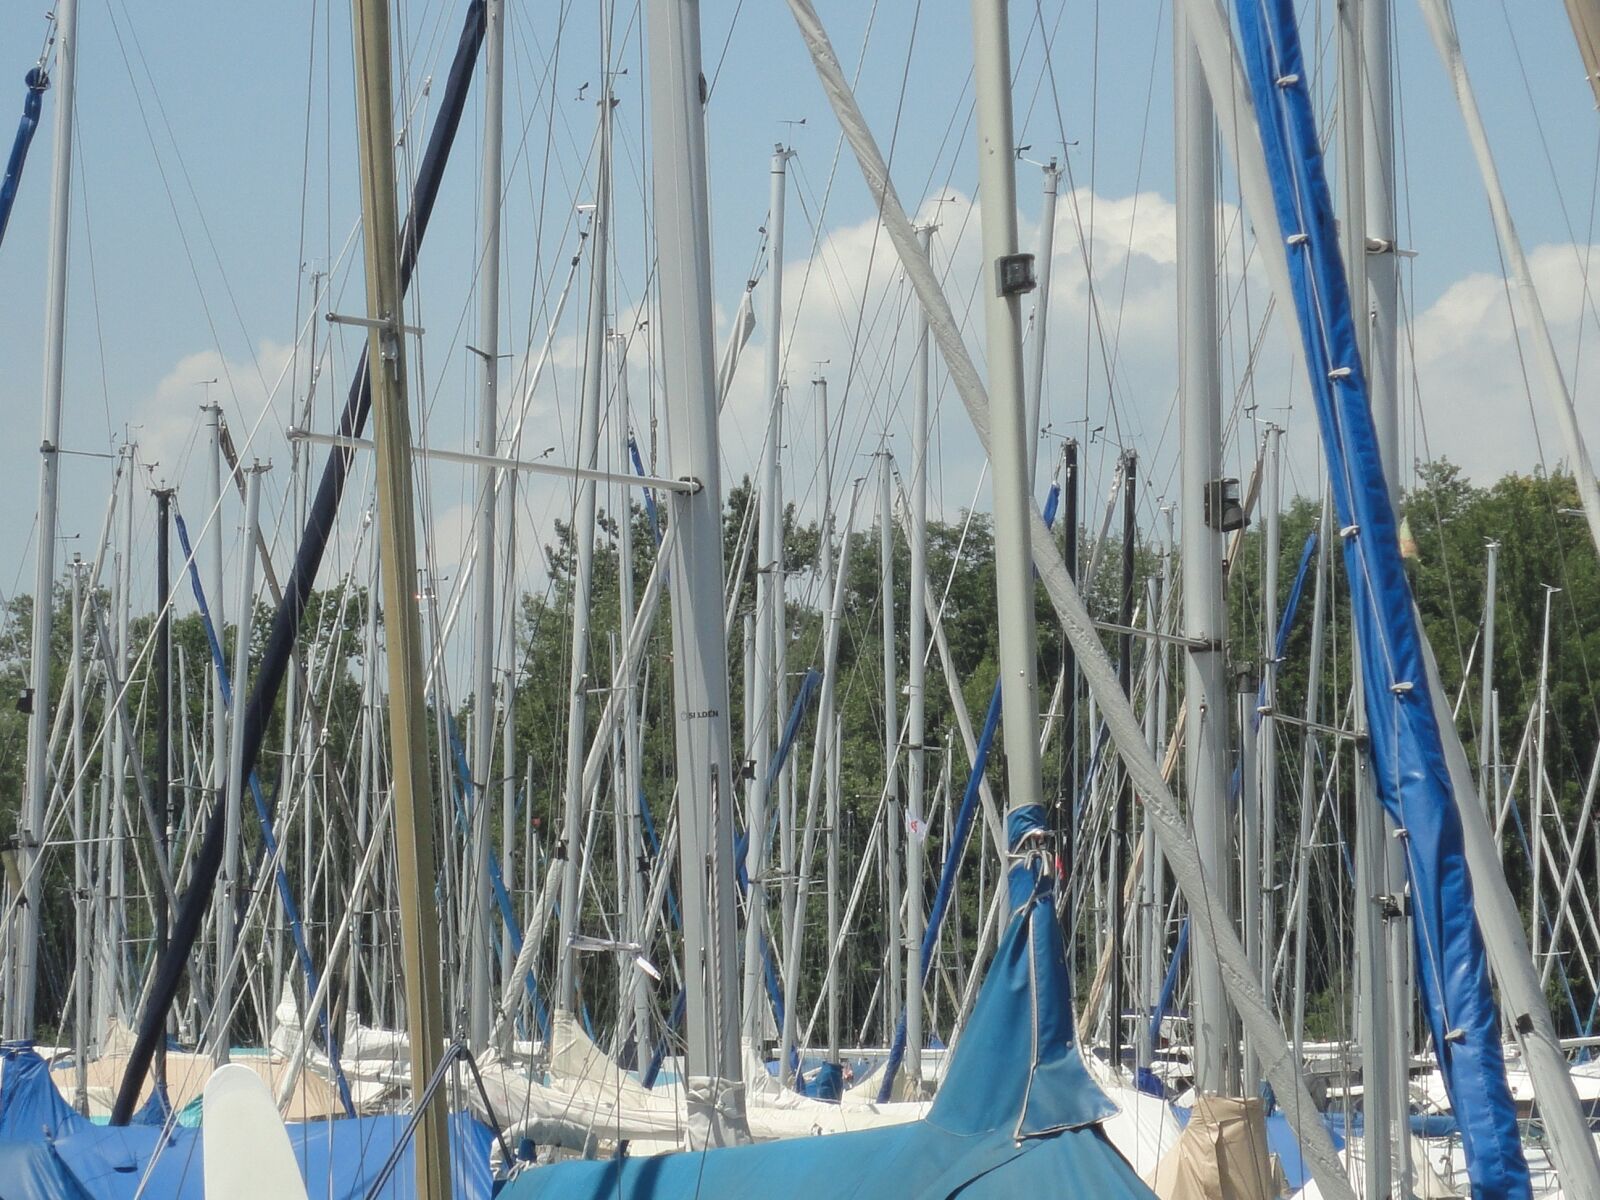 Sony DSC-W380 sample photo. Marina, sail masts, lake photography